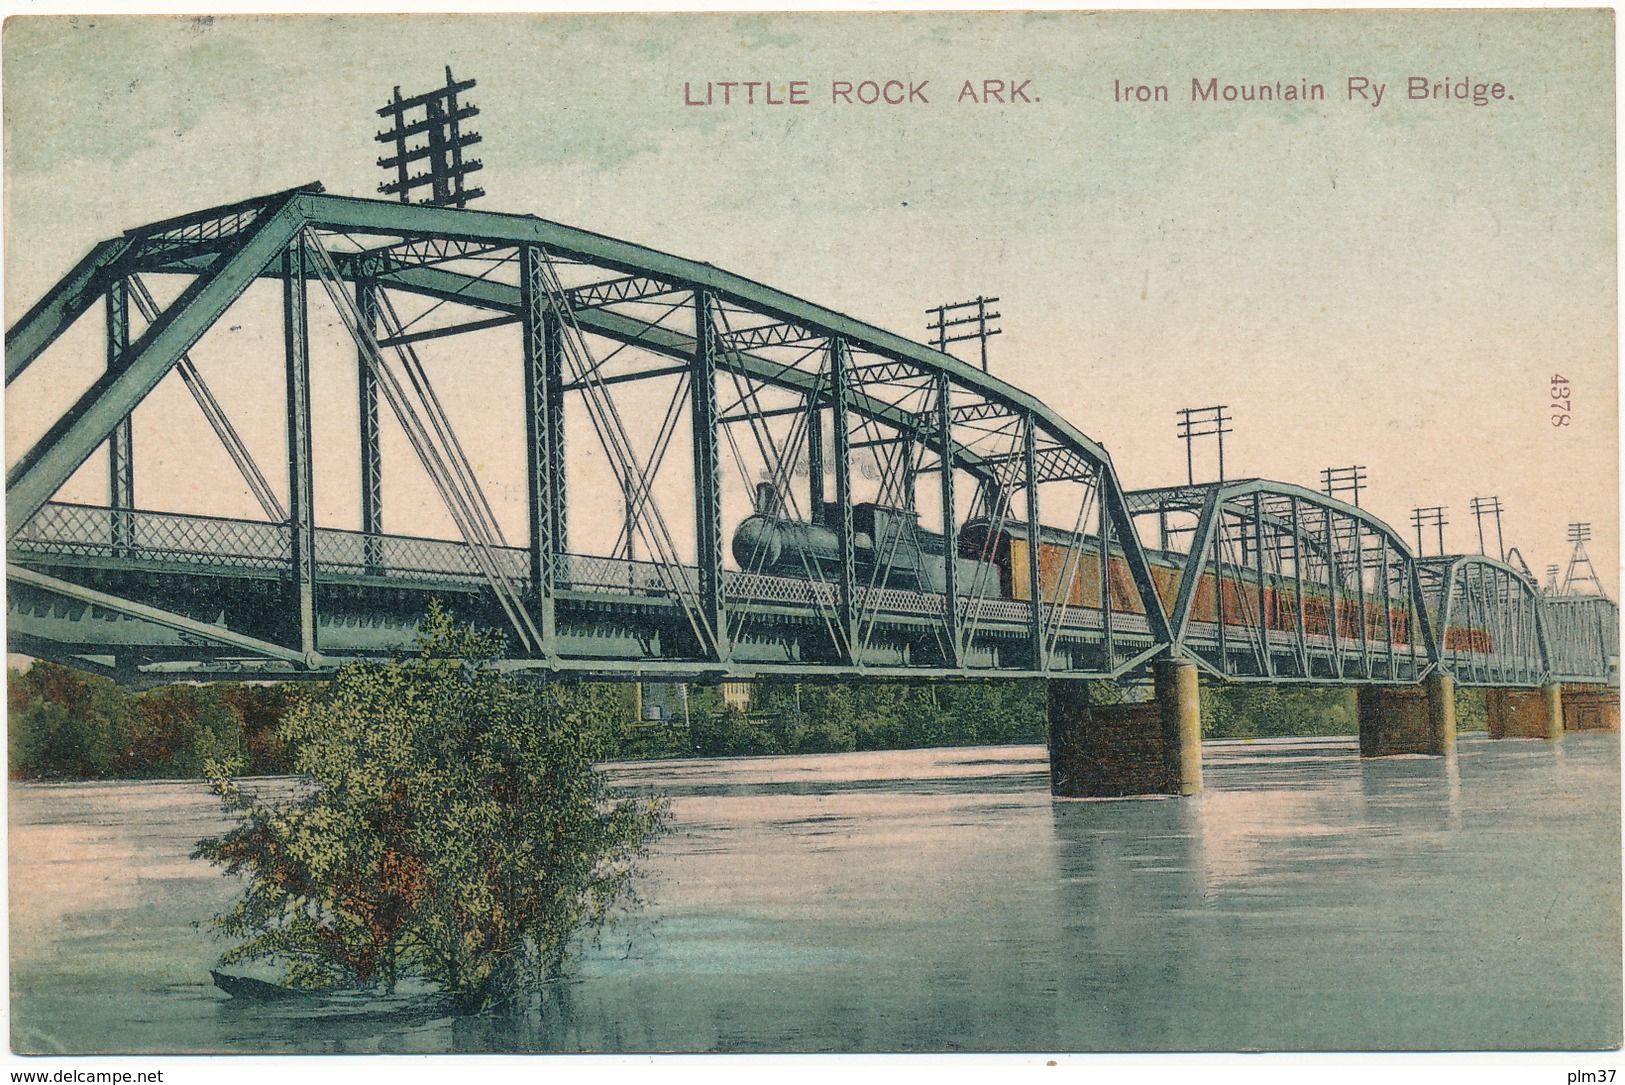 ARK - LITTLE ROCK - Iron Mountain Ry Bridge - Little Rock